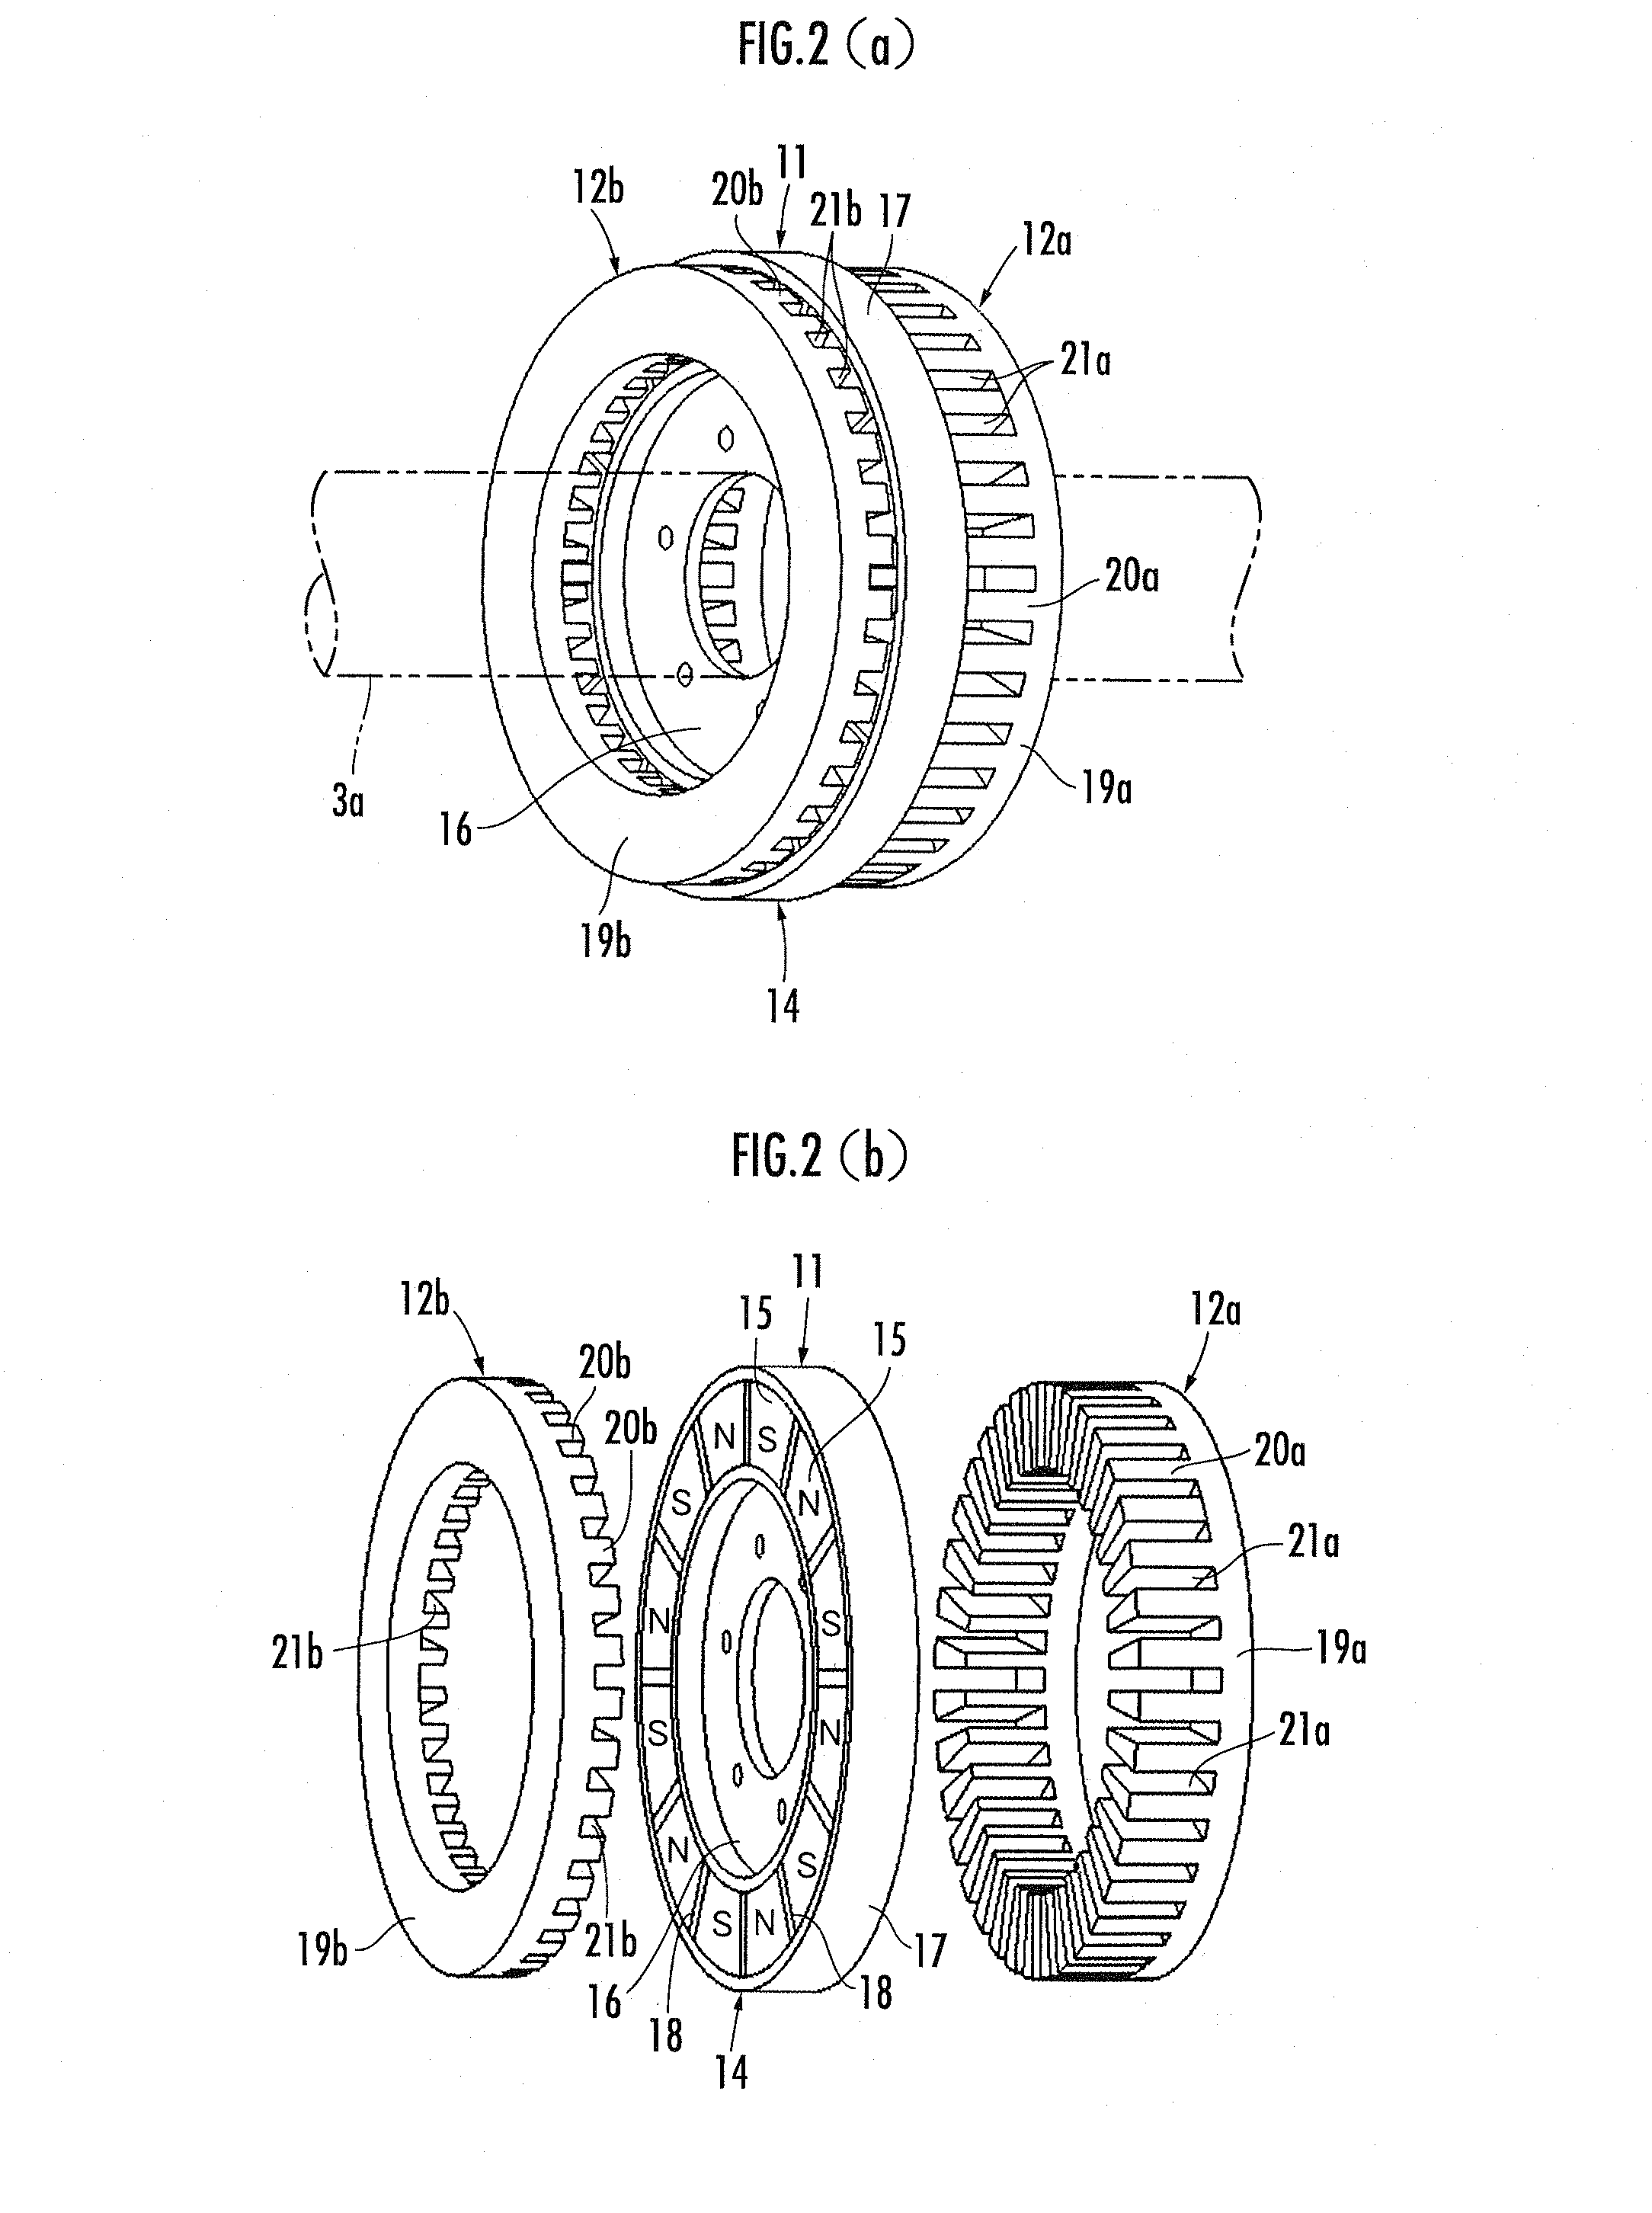 Vector control for an axial gap motor